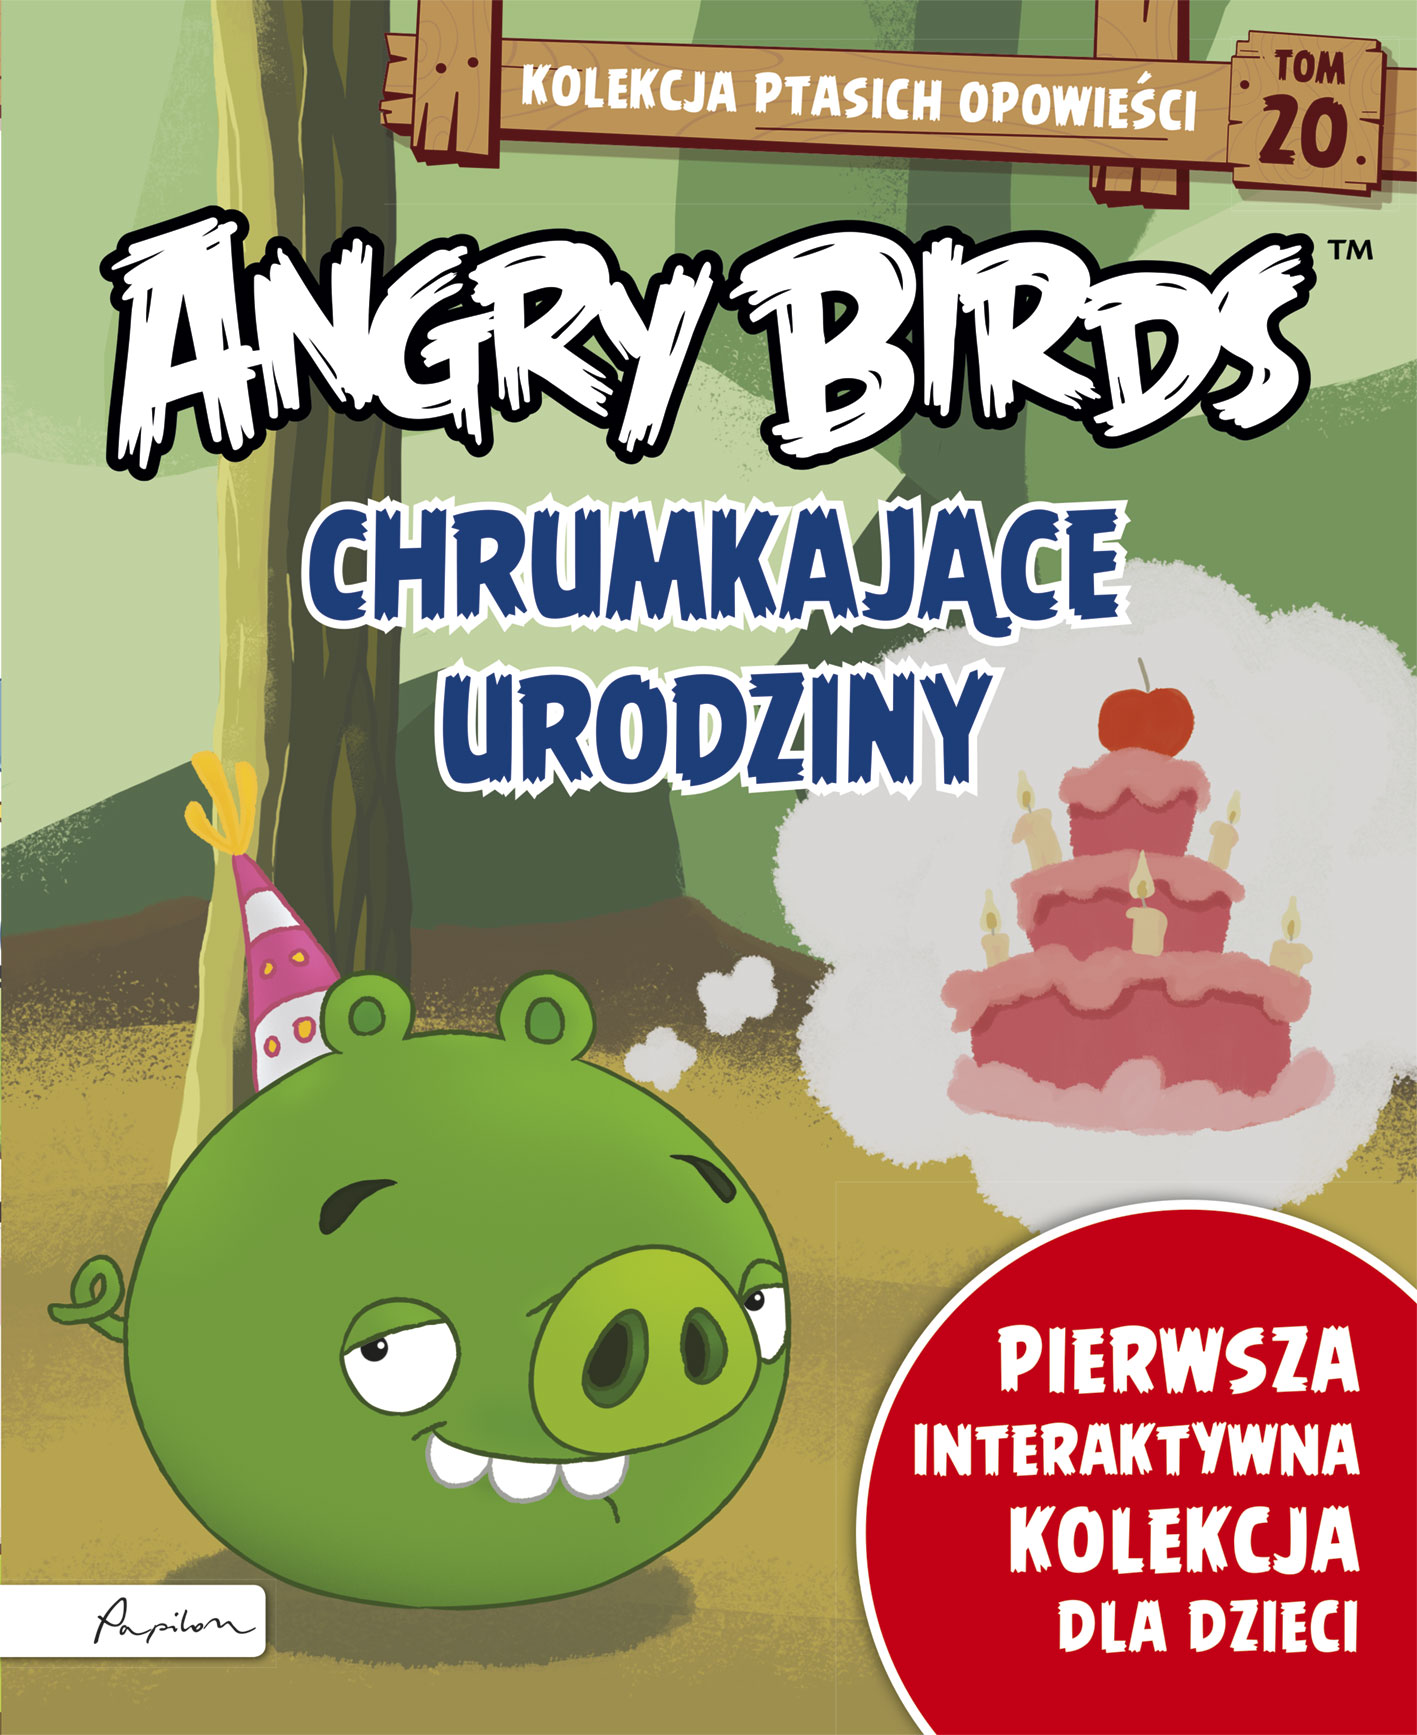 Angry Birds. Kolekcja ptasich opowieści 20. Chrumkające urodziny